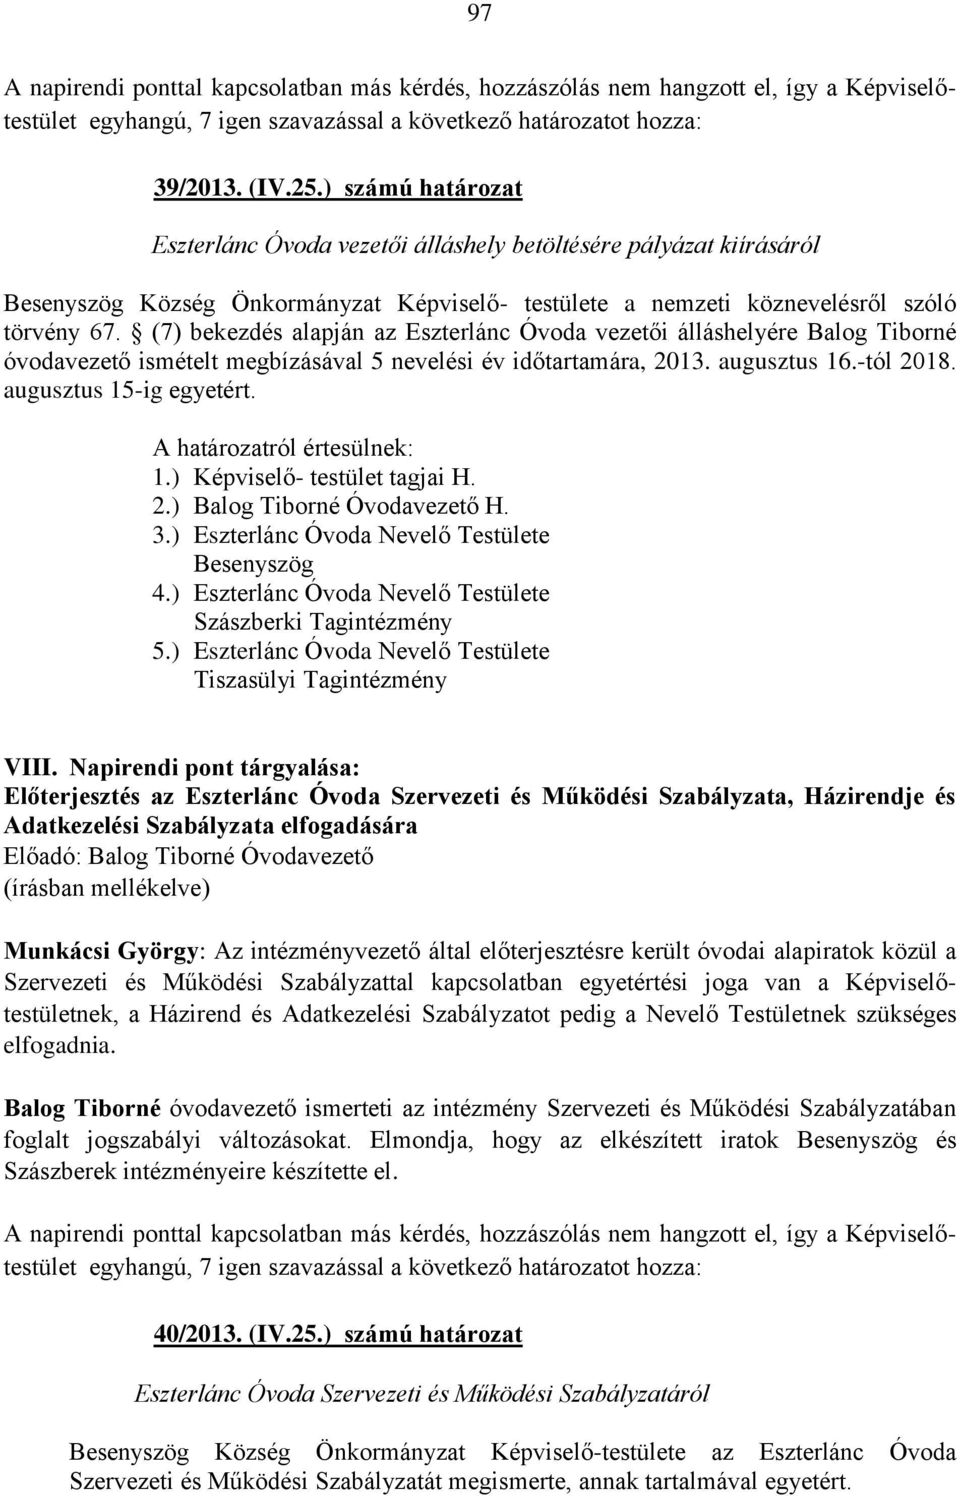 (7) bekezdés alapján az Eszterlánc Óvoda vezetői álláshelyére Balog Tiborné óvodavezető ismételt megbízásával 5 nevelési év időtartamára, 2013. augusztus 16.-tól 2018. augusztus 15-ig egyetért.